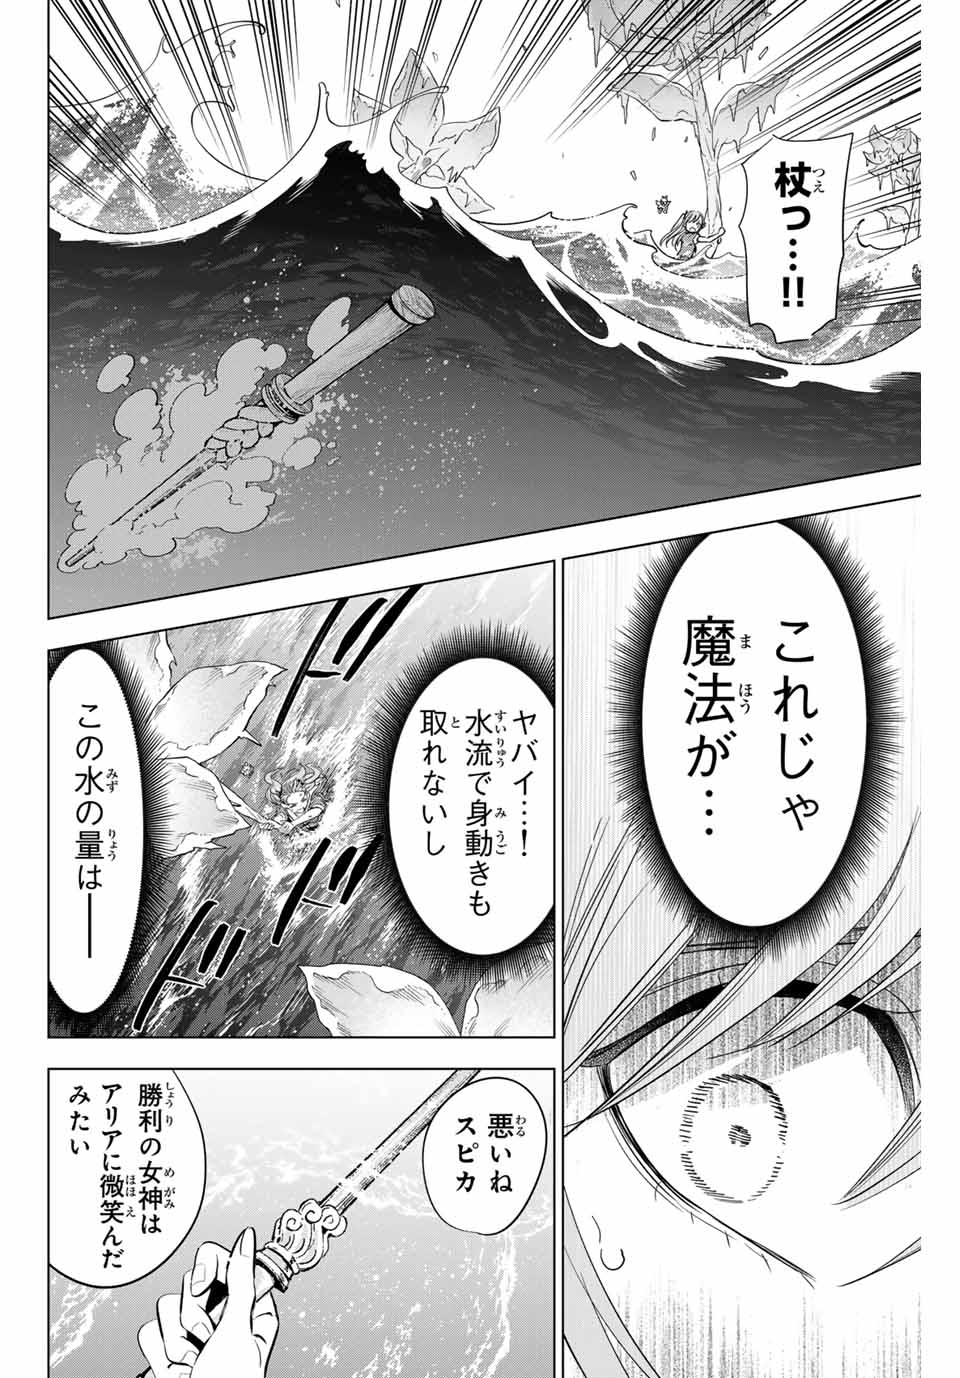 Kuroneko to Majo no Kyoushitsu - Chapter 55 - Page 22